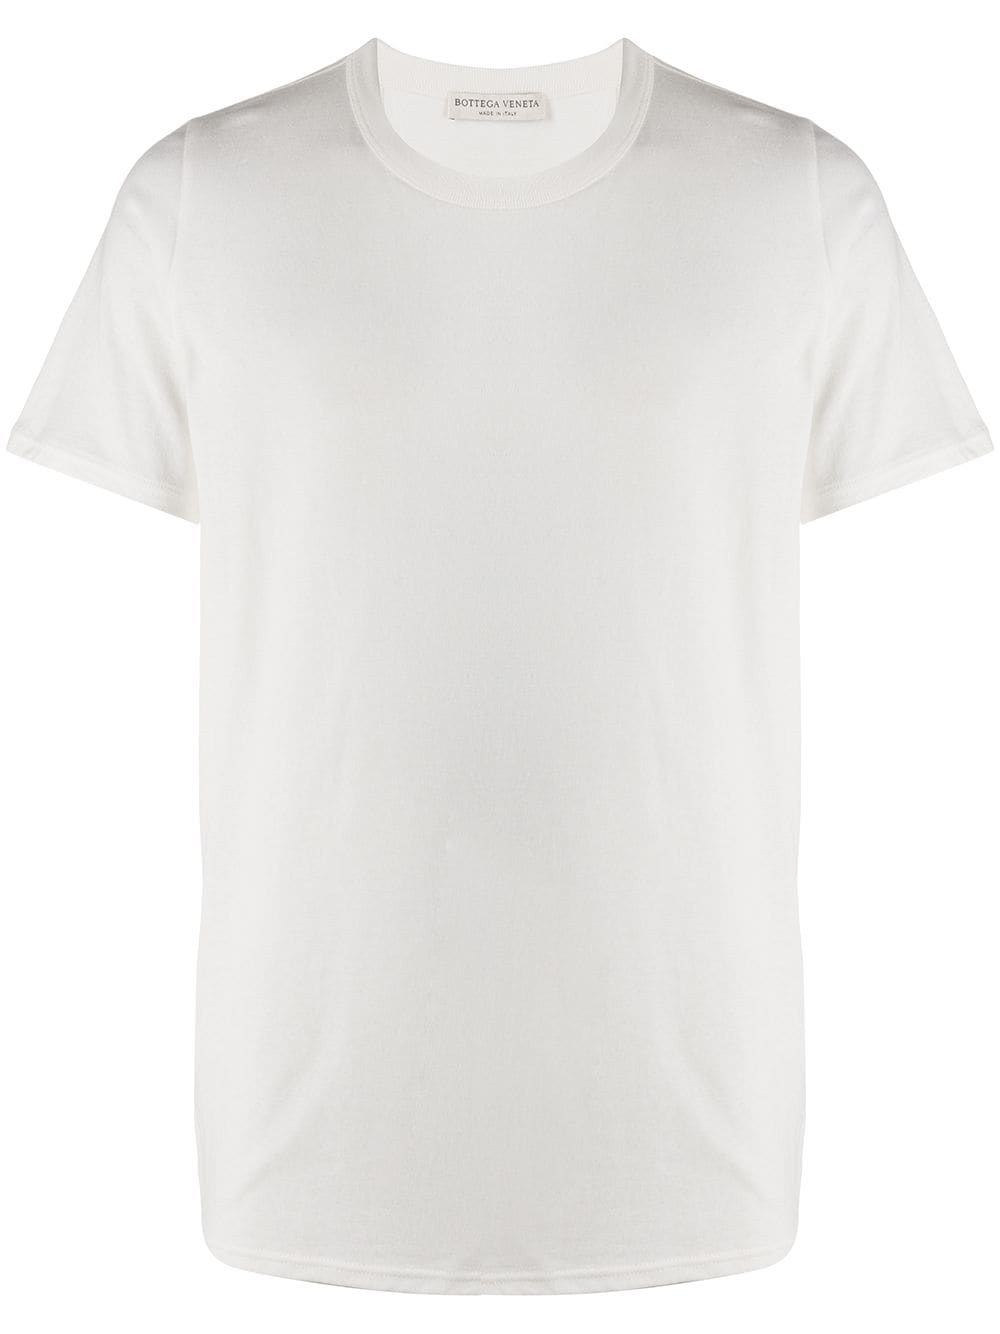 фото Bottega veneta футболка с круглым вырезом